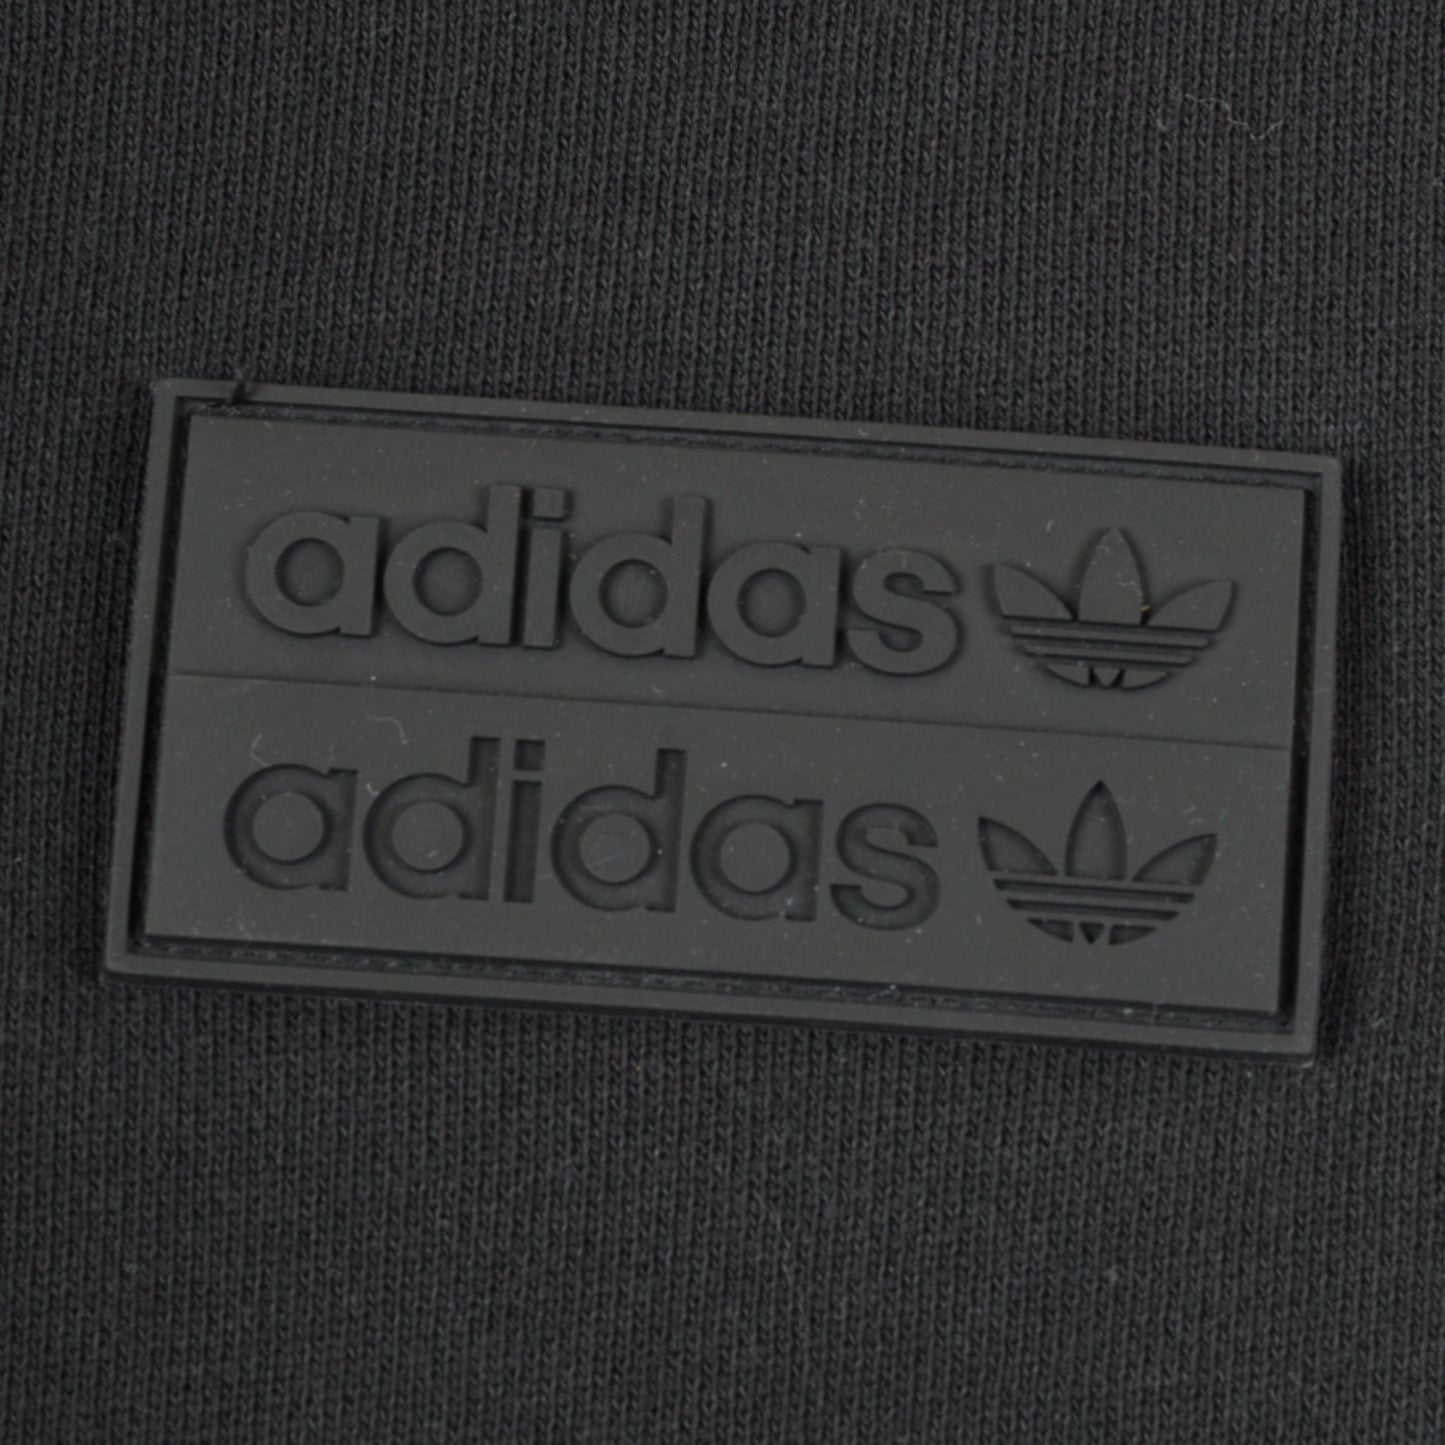 Vintage Adidas Sweatshirt Black Small